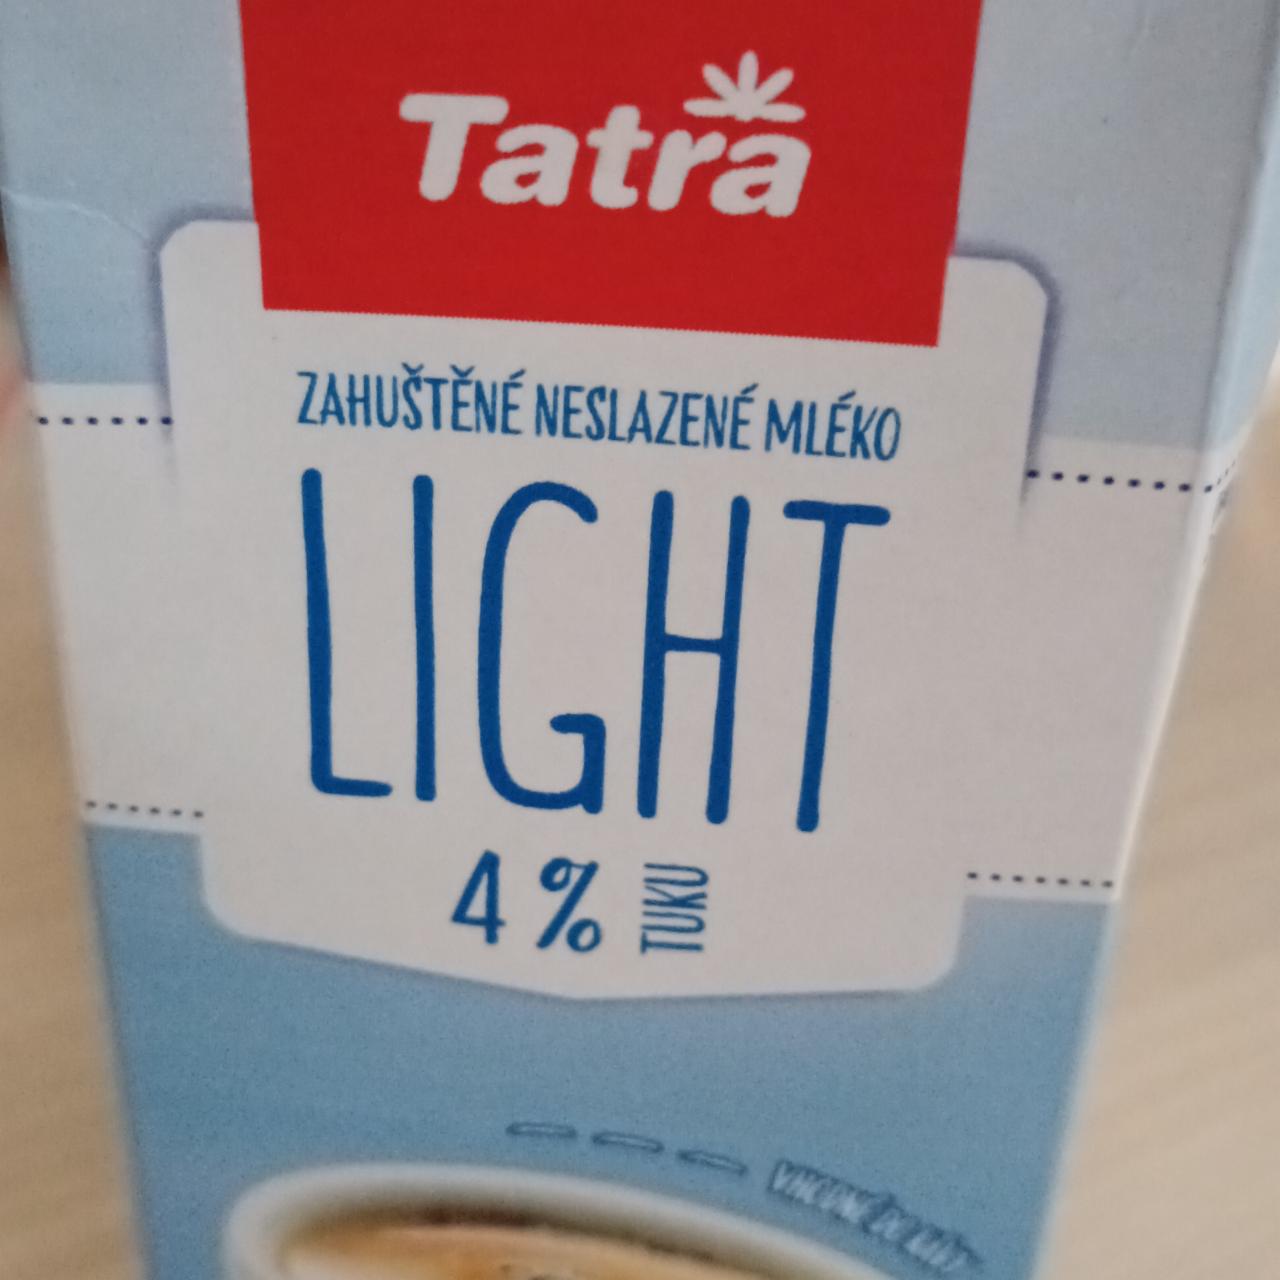 Fotografie - zahuštěné neslazené mléko 4% Light Tatra